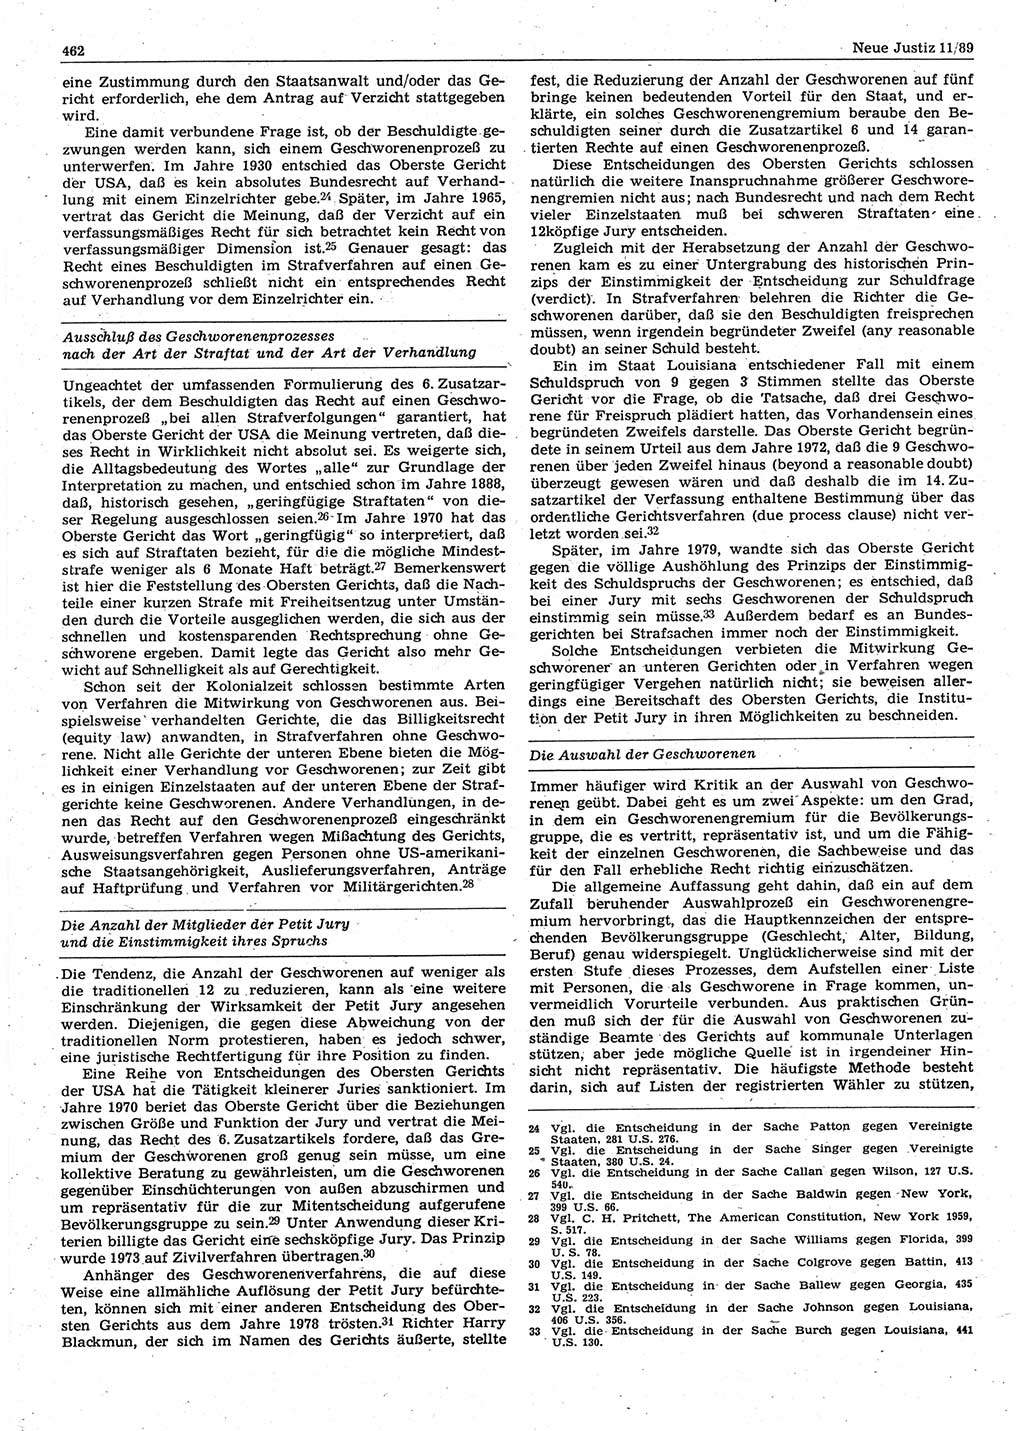 Neue Justiz (NJ), Zeitschrift für sozialistisches Recht und Gesetzlichkeit [Deutsche Demokratische Republik (DDR)], 43. Jahrgang 1989, Seite 462 (NJ DDR 1989, S. 462)